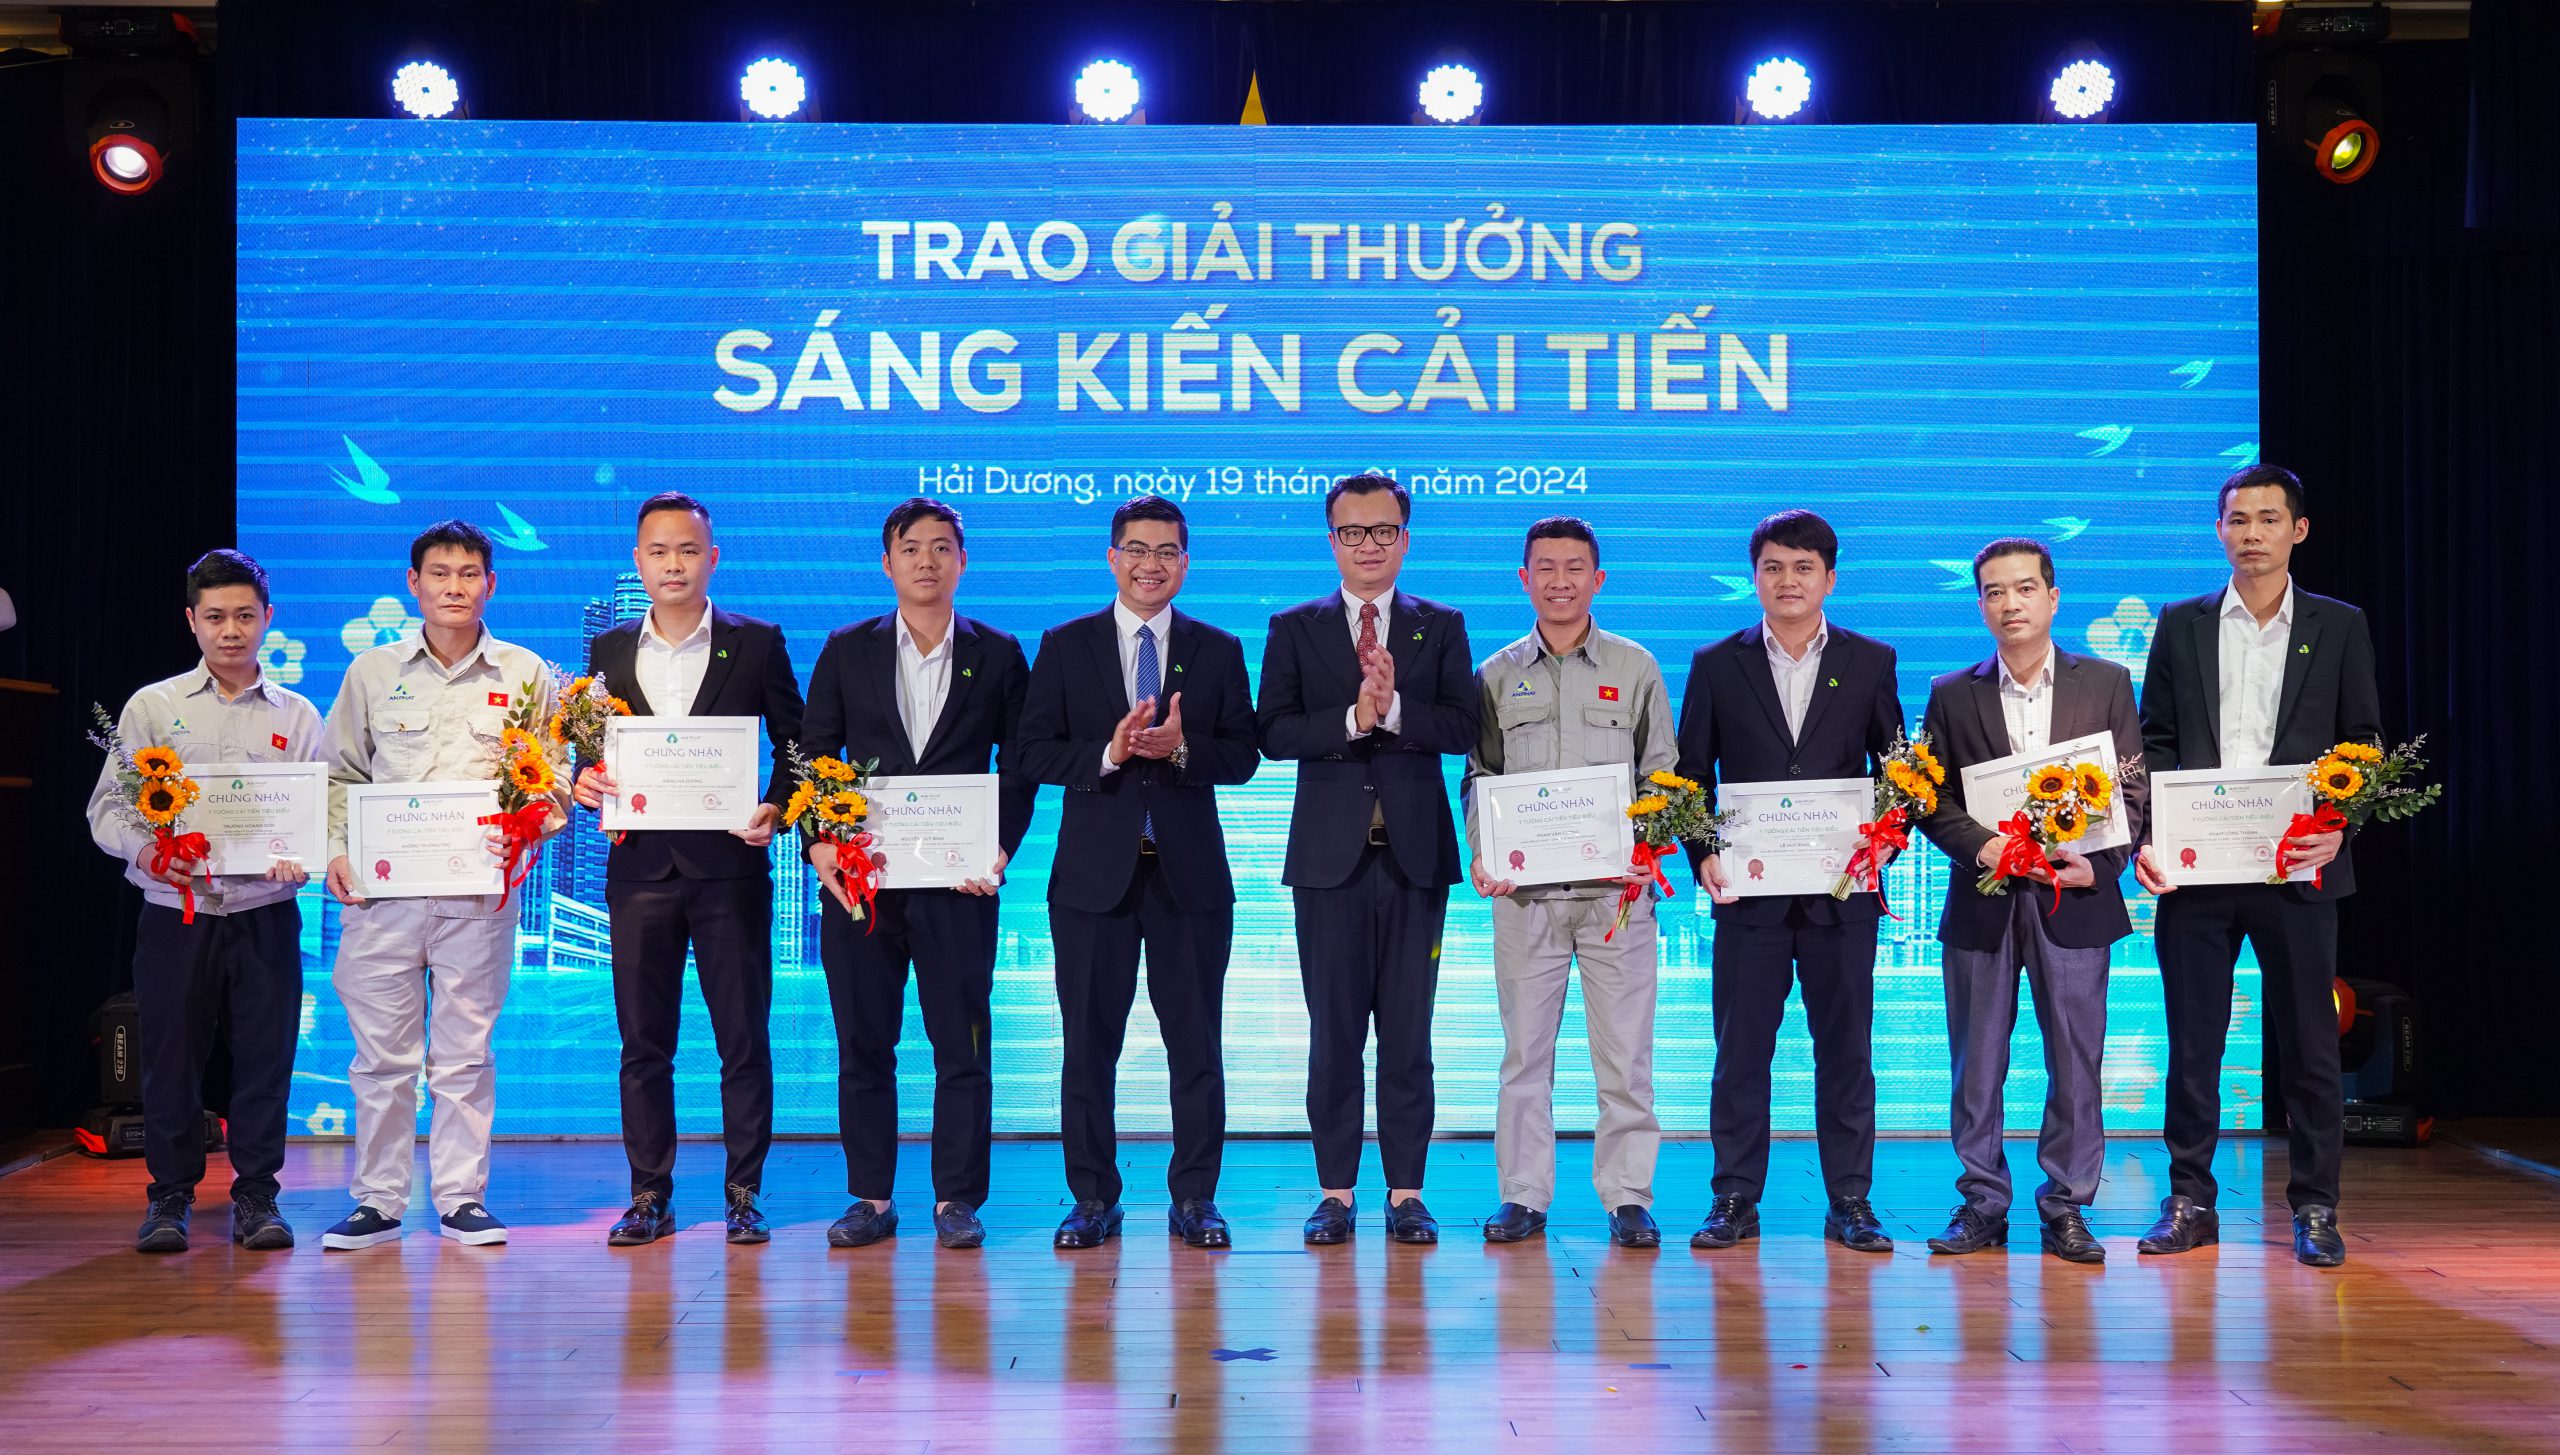 Ban Lãnh đạo Tập đoàn trao tặng thưởng các cá nhân có đóng góp sáng kiến cải tiến cho hoạt động kinh doanh sản xuất